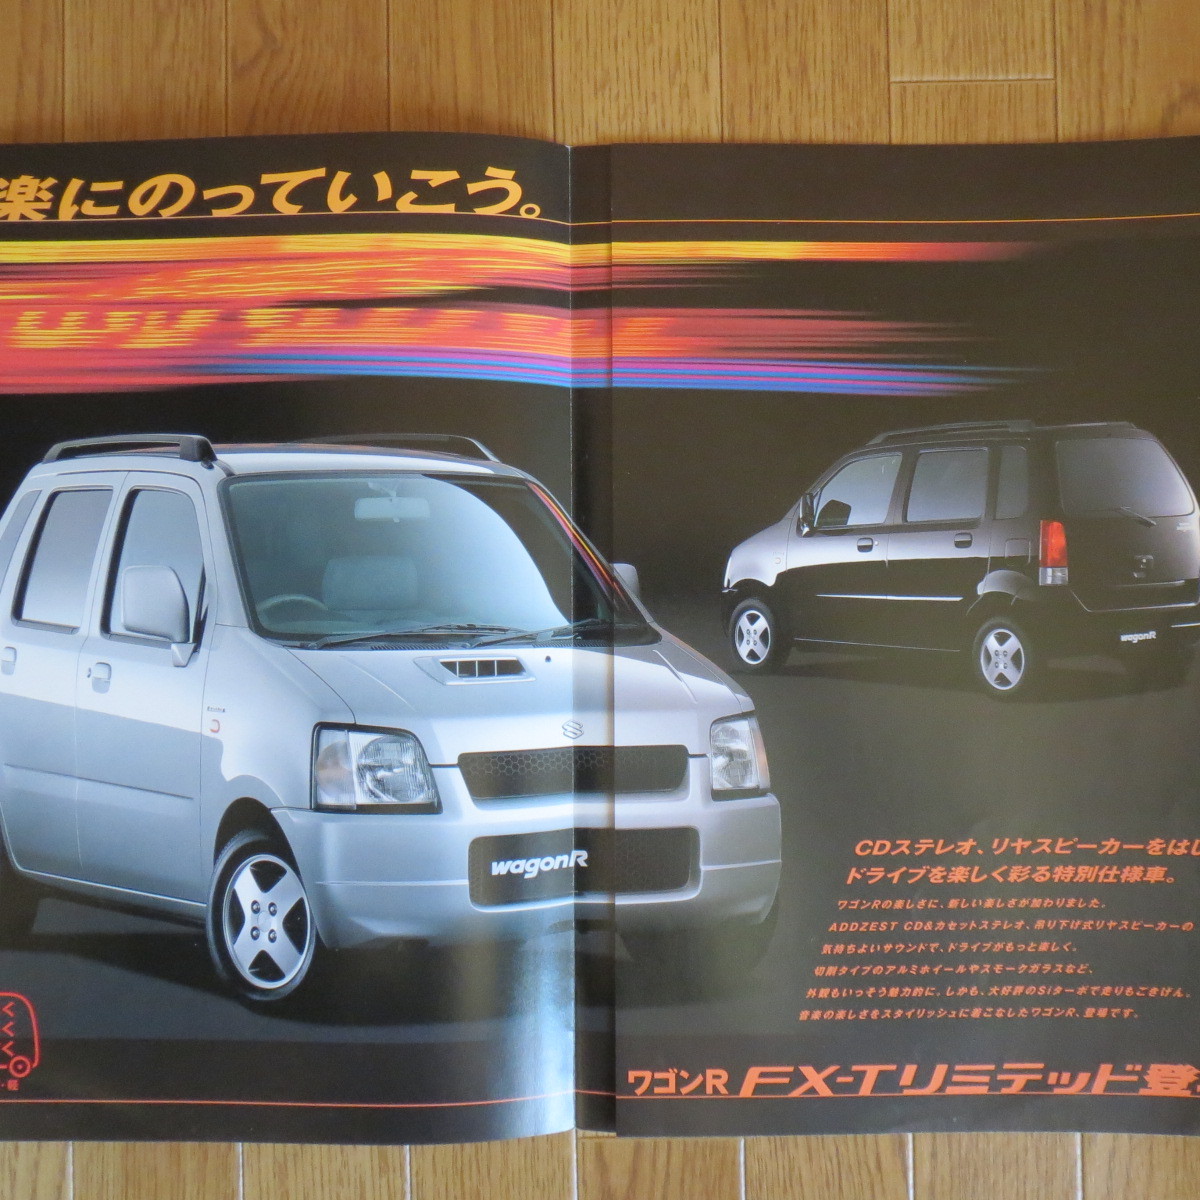 ワゴンR 特別仕様車 FX-T Limited 1999年4月 カタログ■csz17_画像3